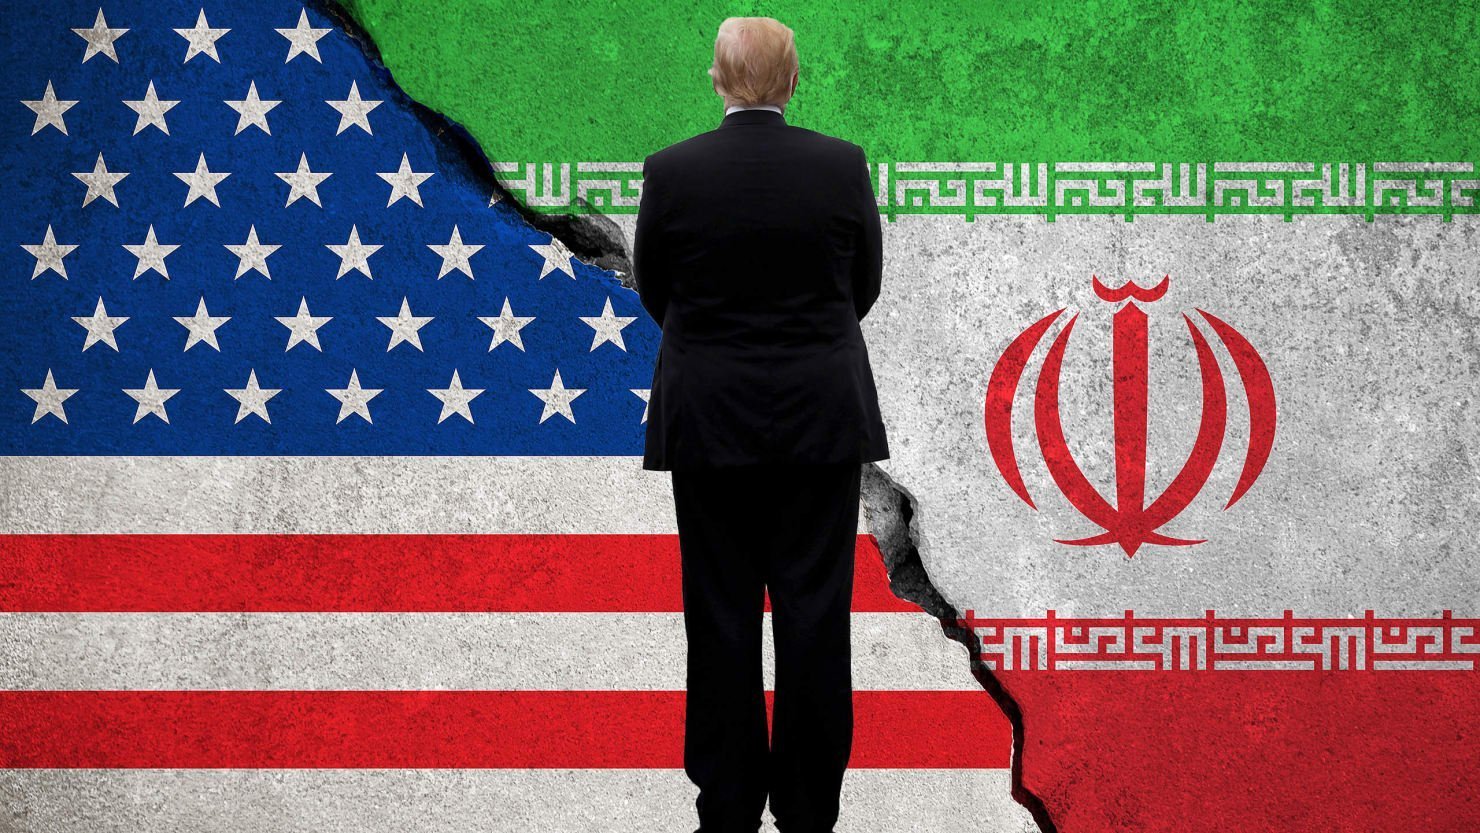 ԱՄՆ-ը հրաժարվել է Իրանի դեմ պատժամիջոցներից բացառություններ անել երրորդ երկրների համար